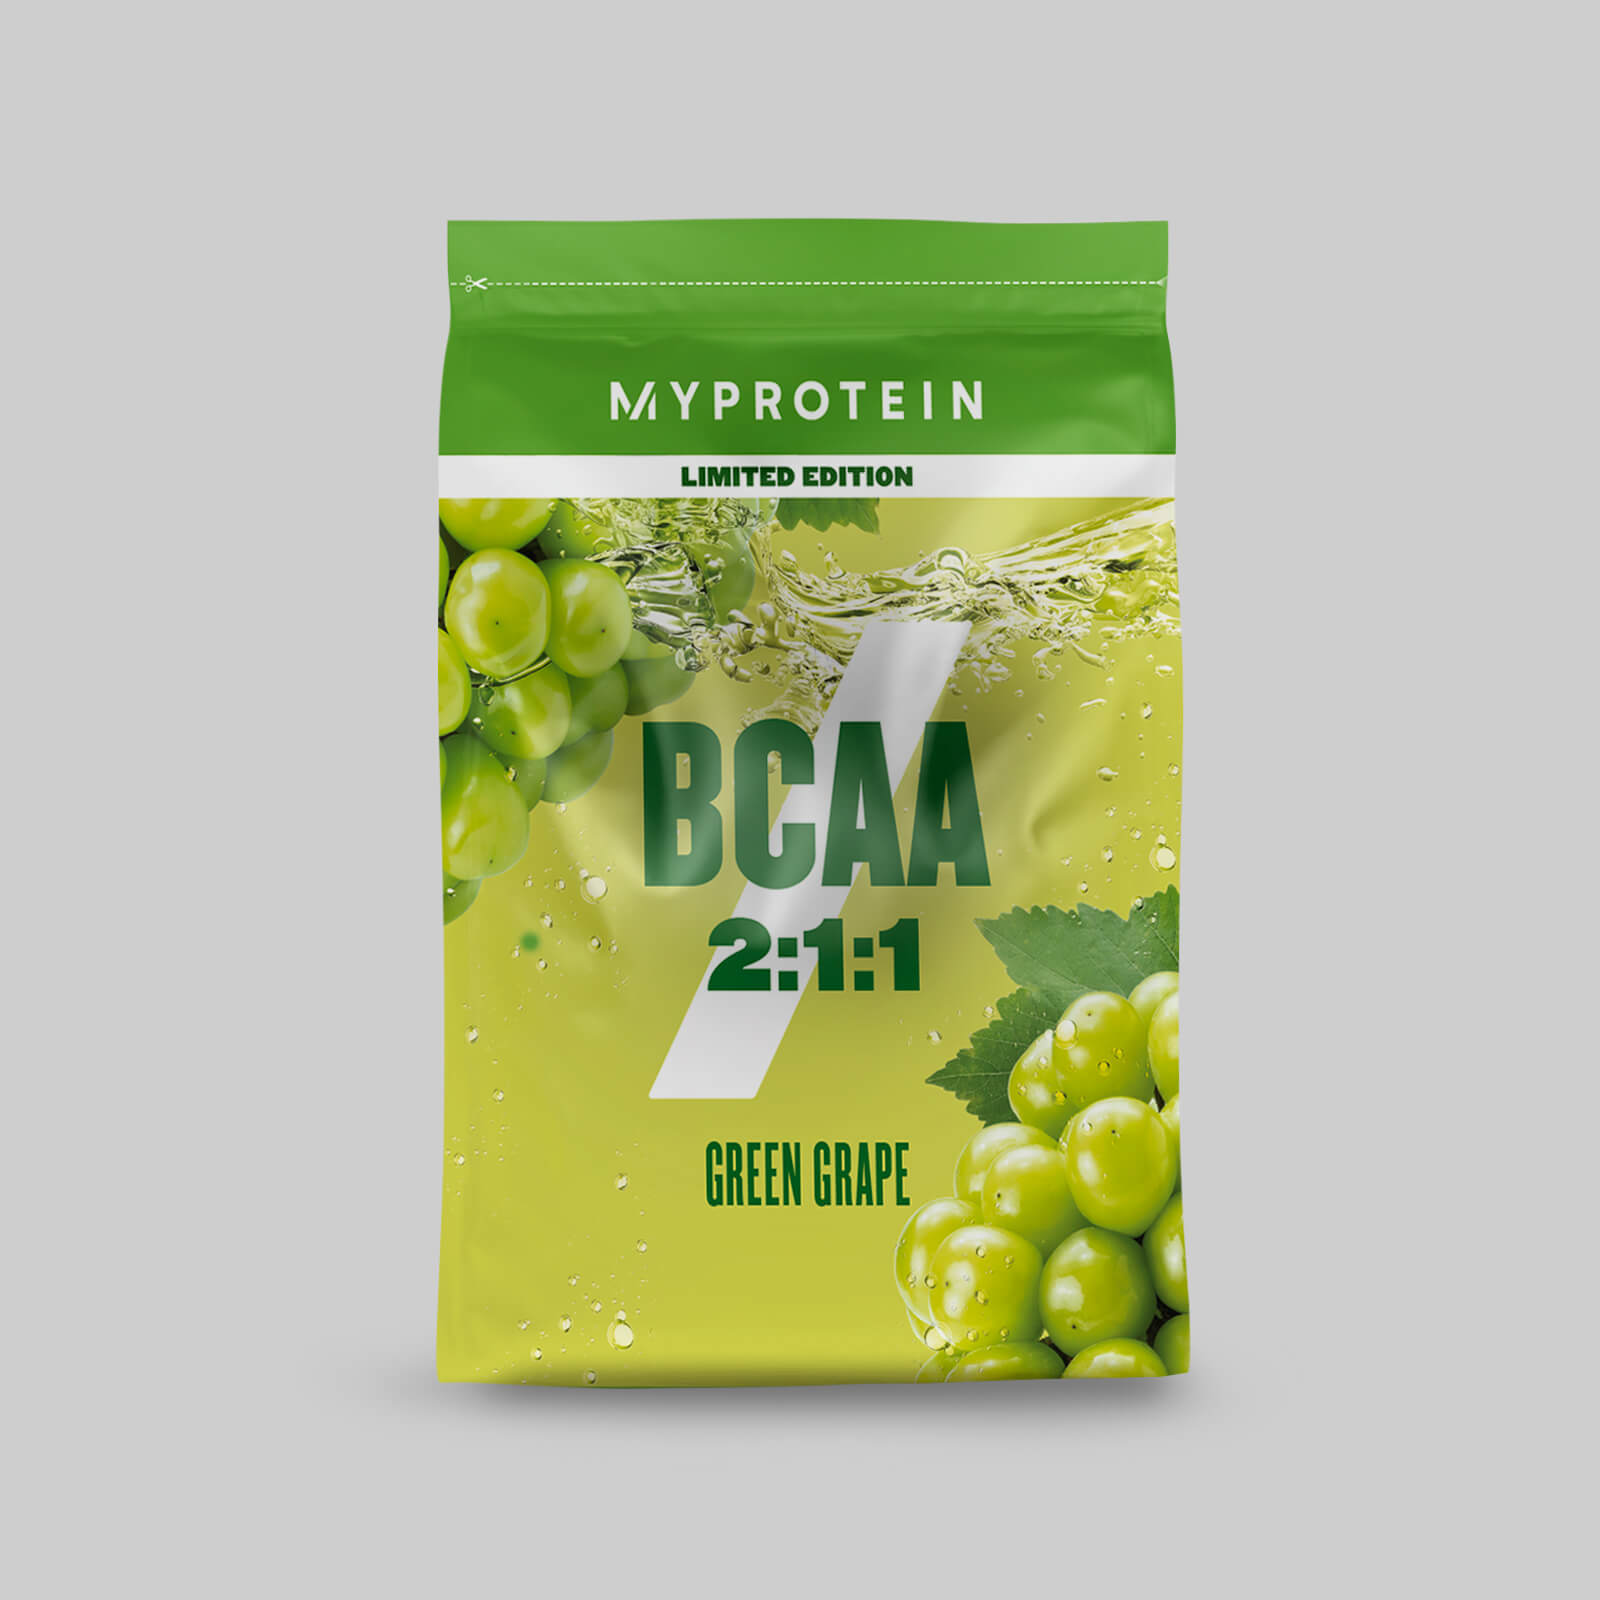 BCAA - Green Grape flavour